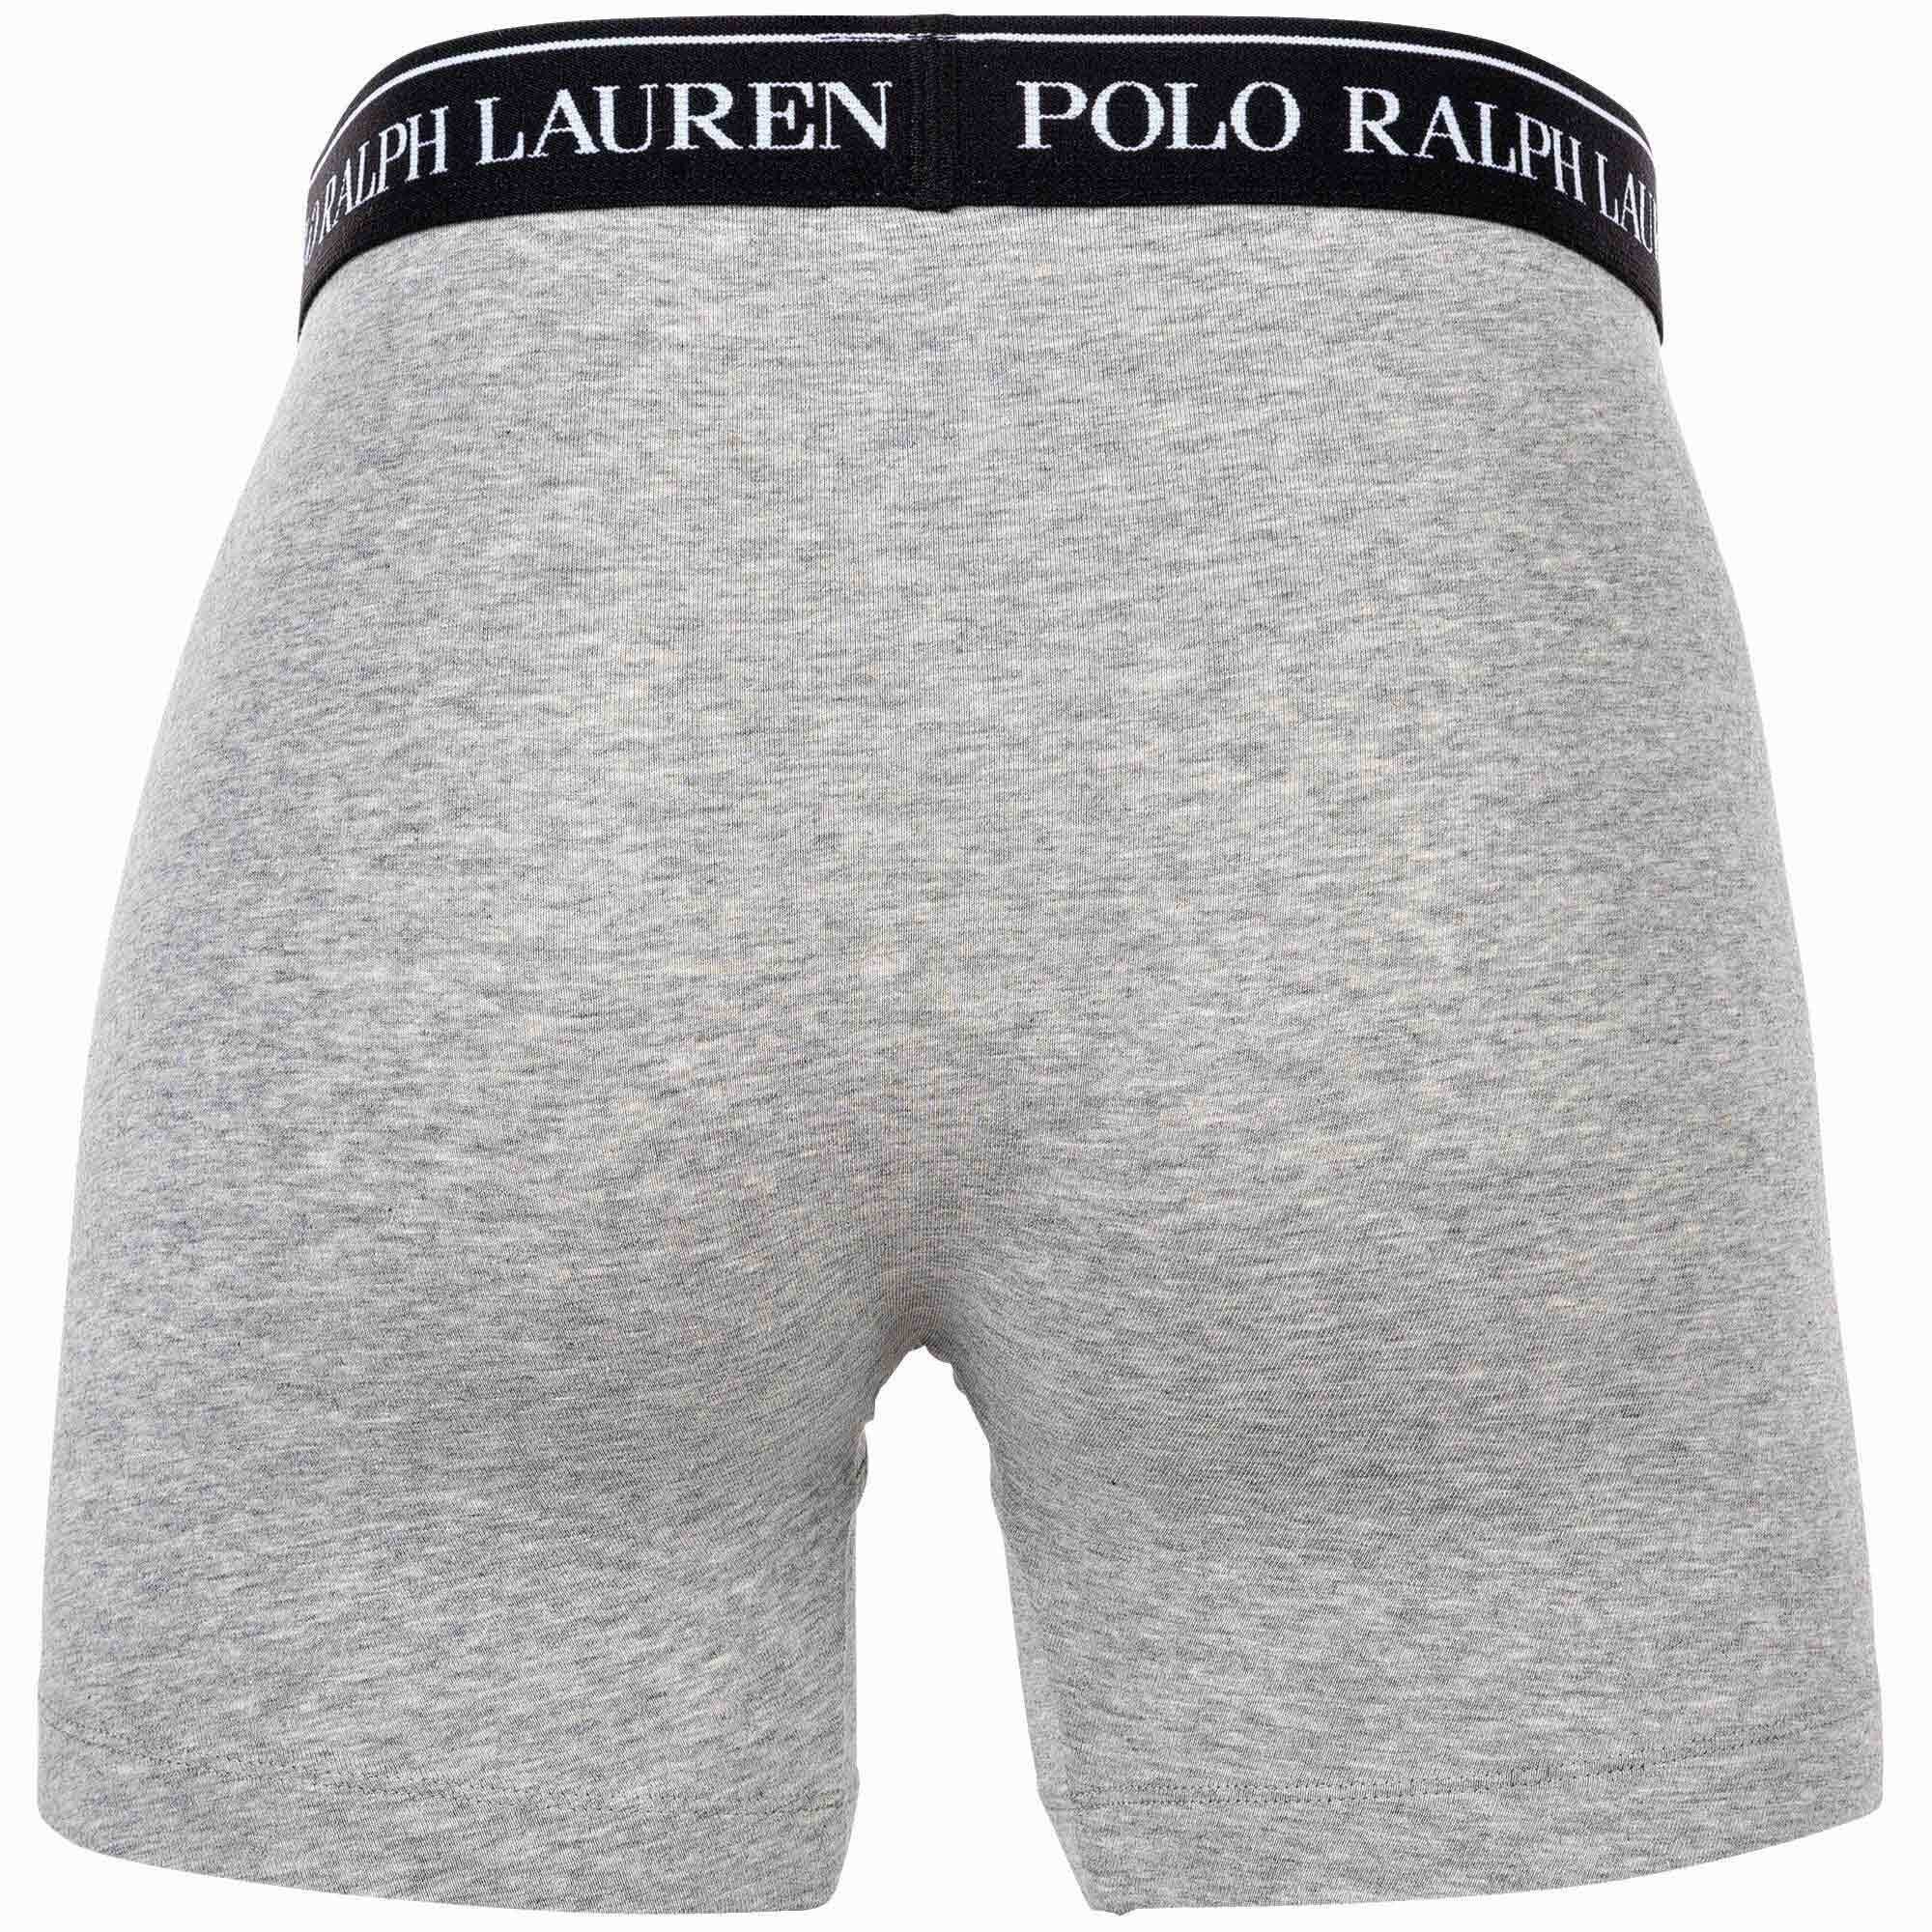 Ralph - Pack Herren BRIEF Boxer BOXER Schwarz/Weiß/Grau 3er Lauren - 3 Polo Shorts, Boxer